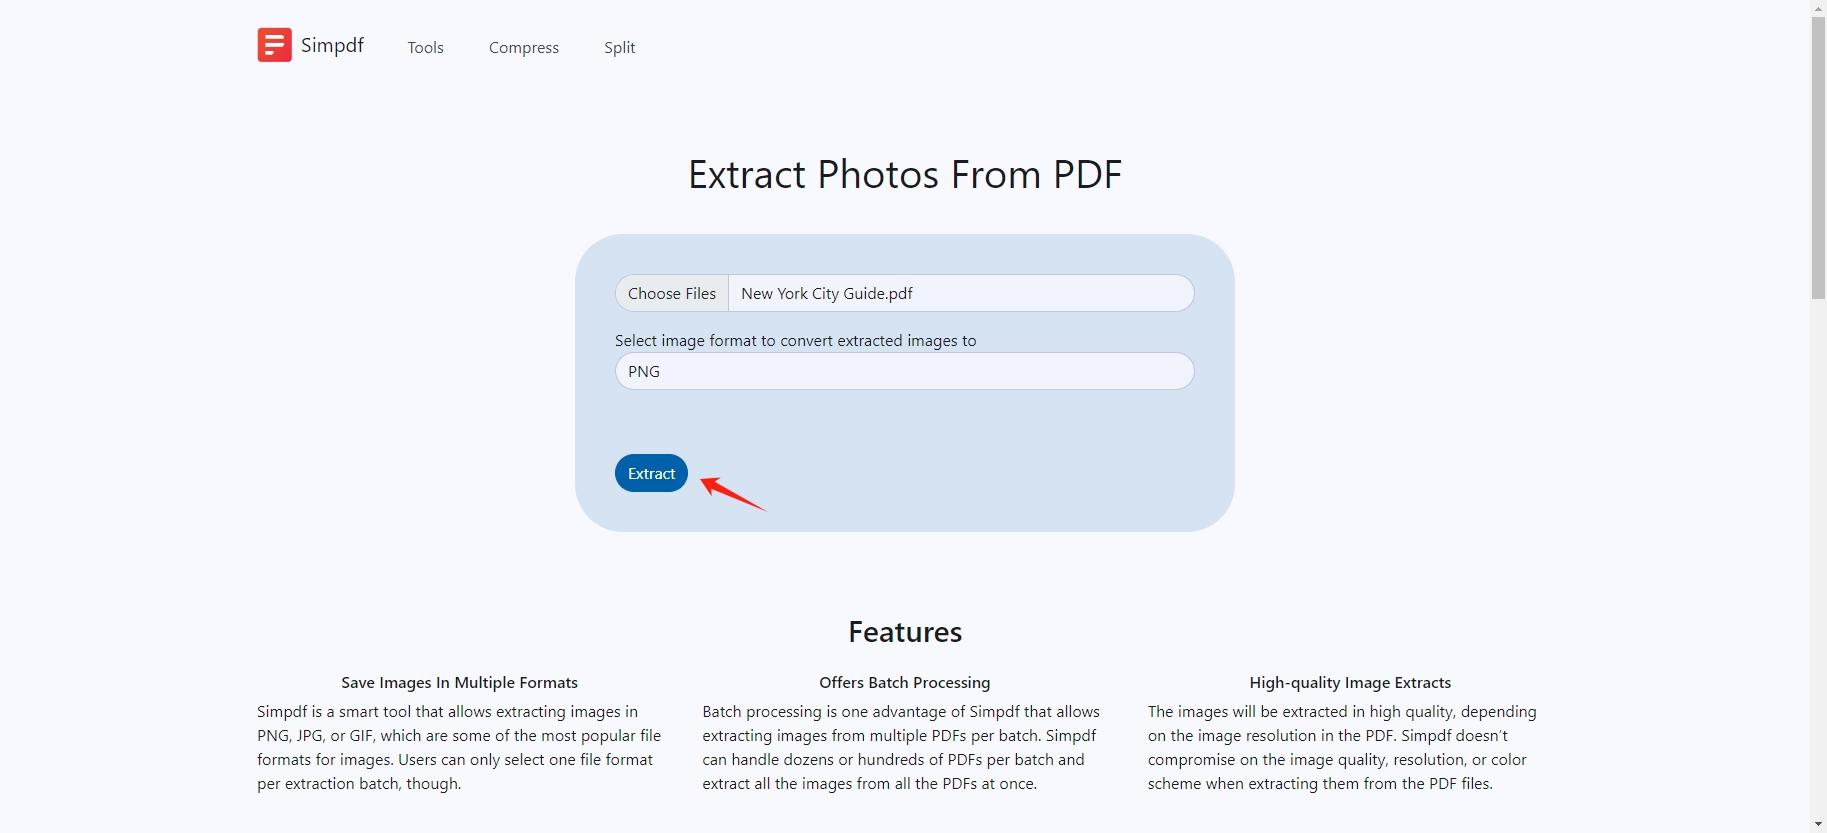 Klicken Sie hier, um PDF-Bilder mit Simpdf zu extrahieren